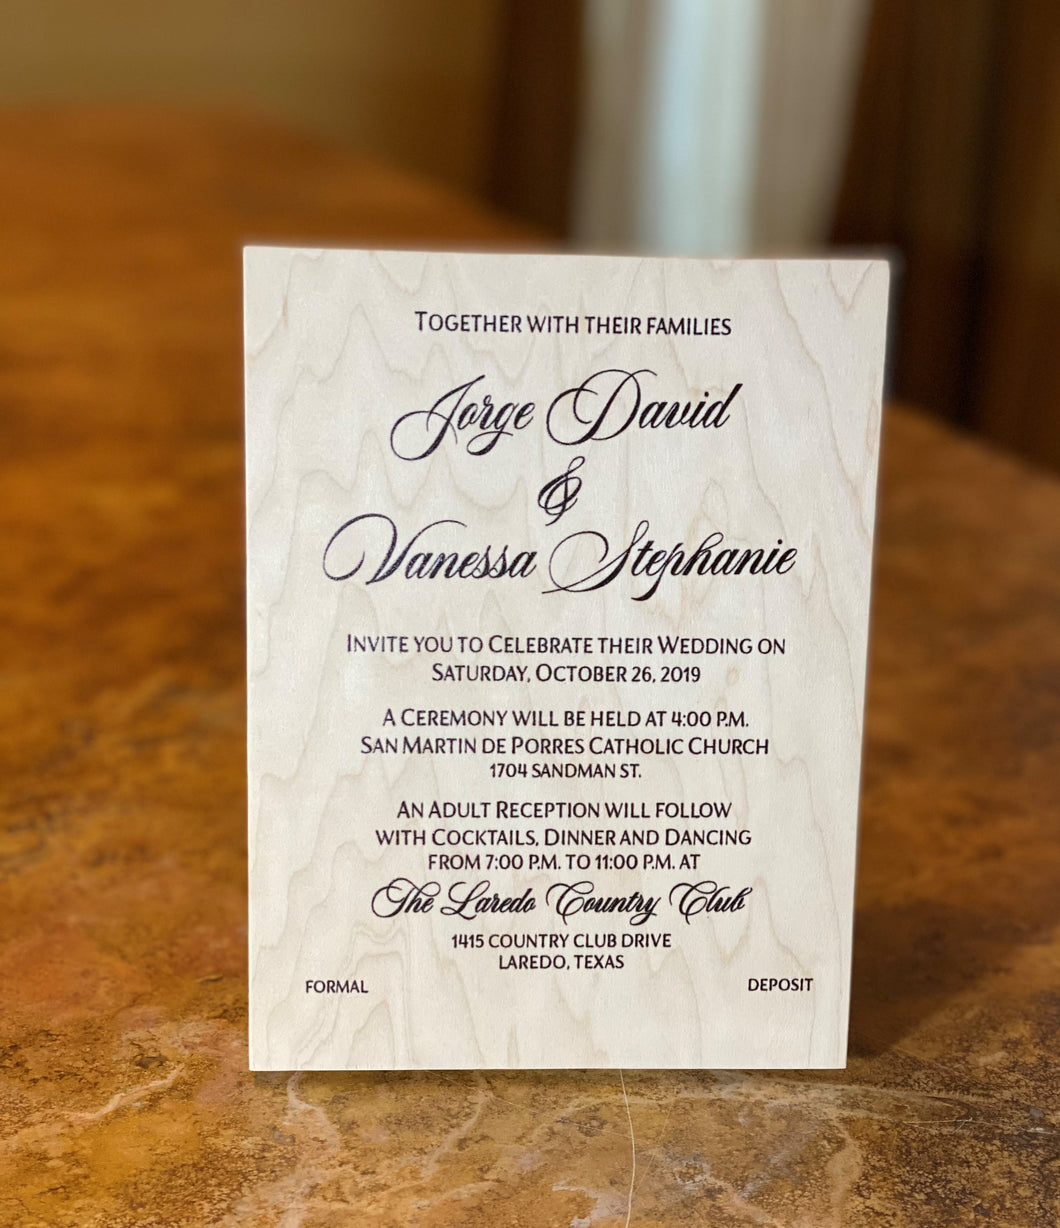 Wedding Invitation printed on wood